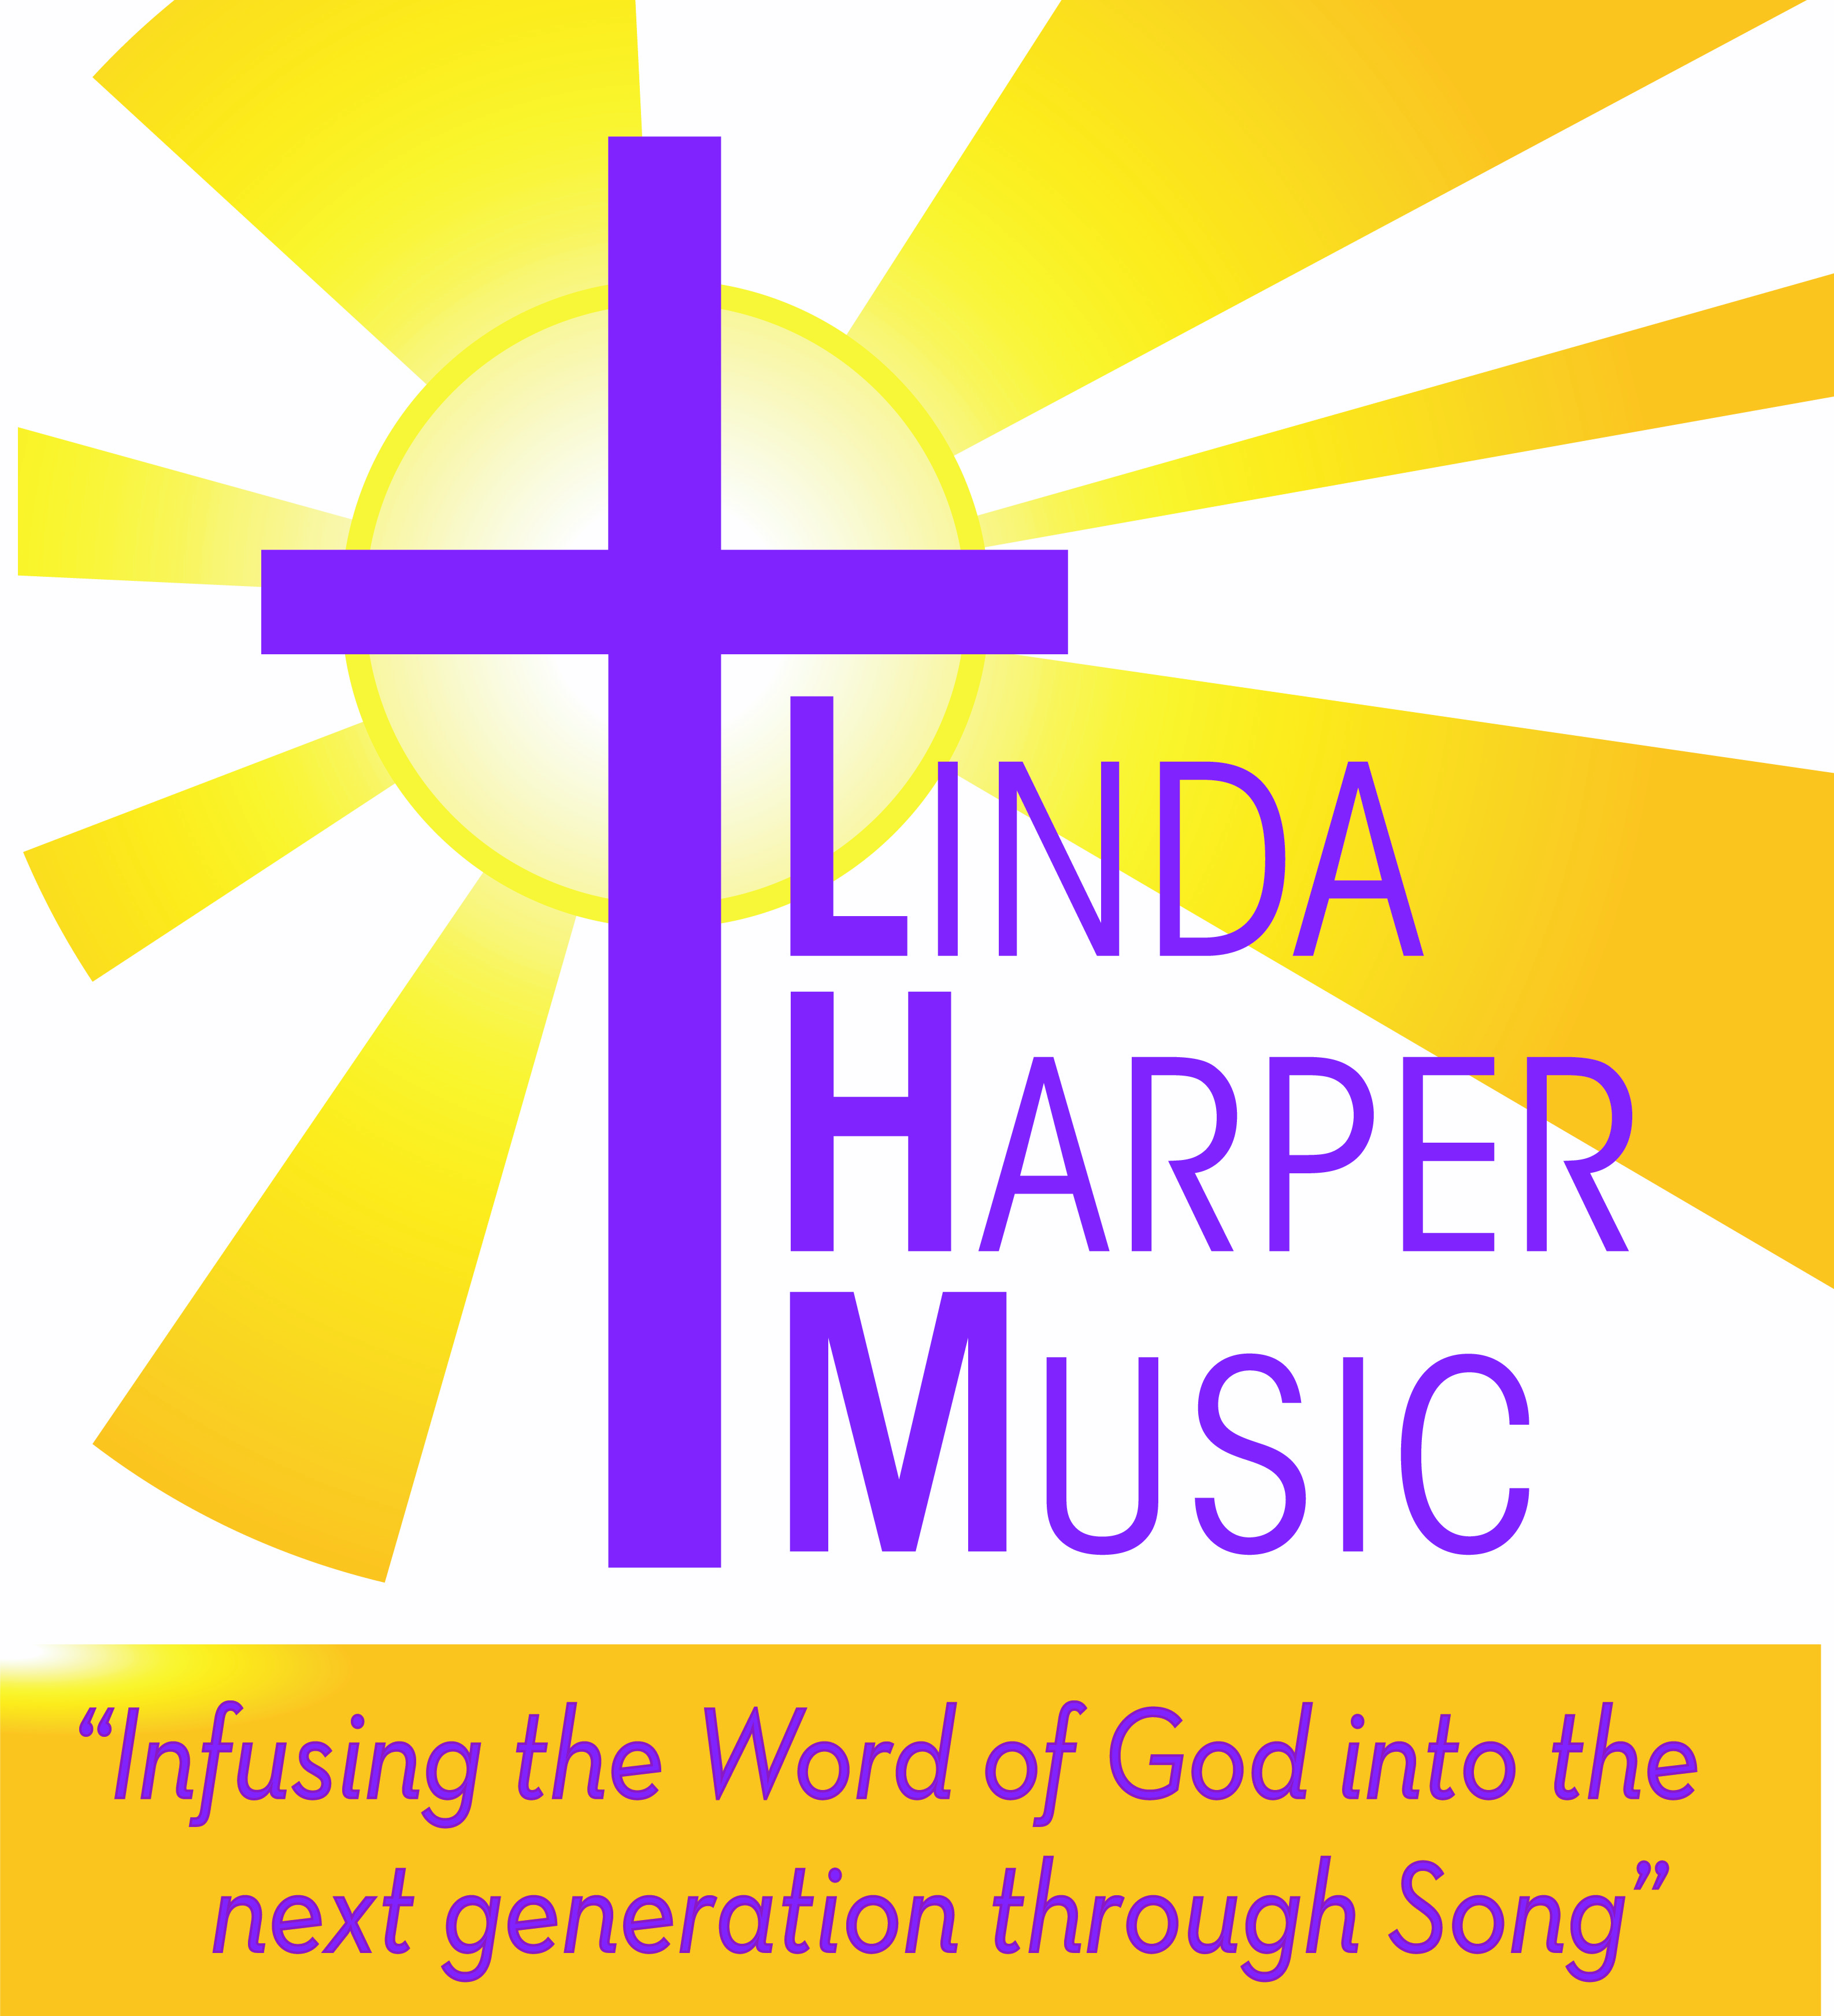 Linda Harper Music